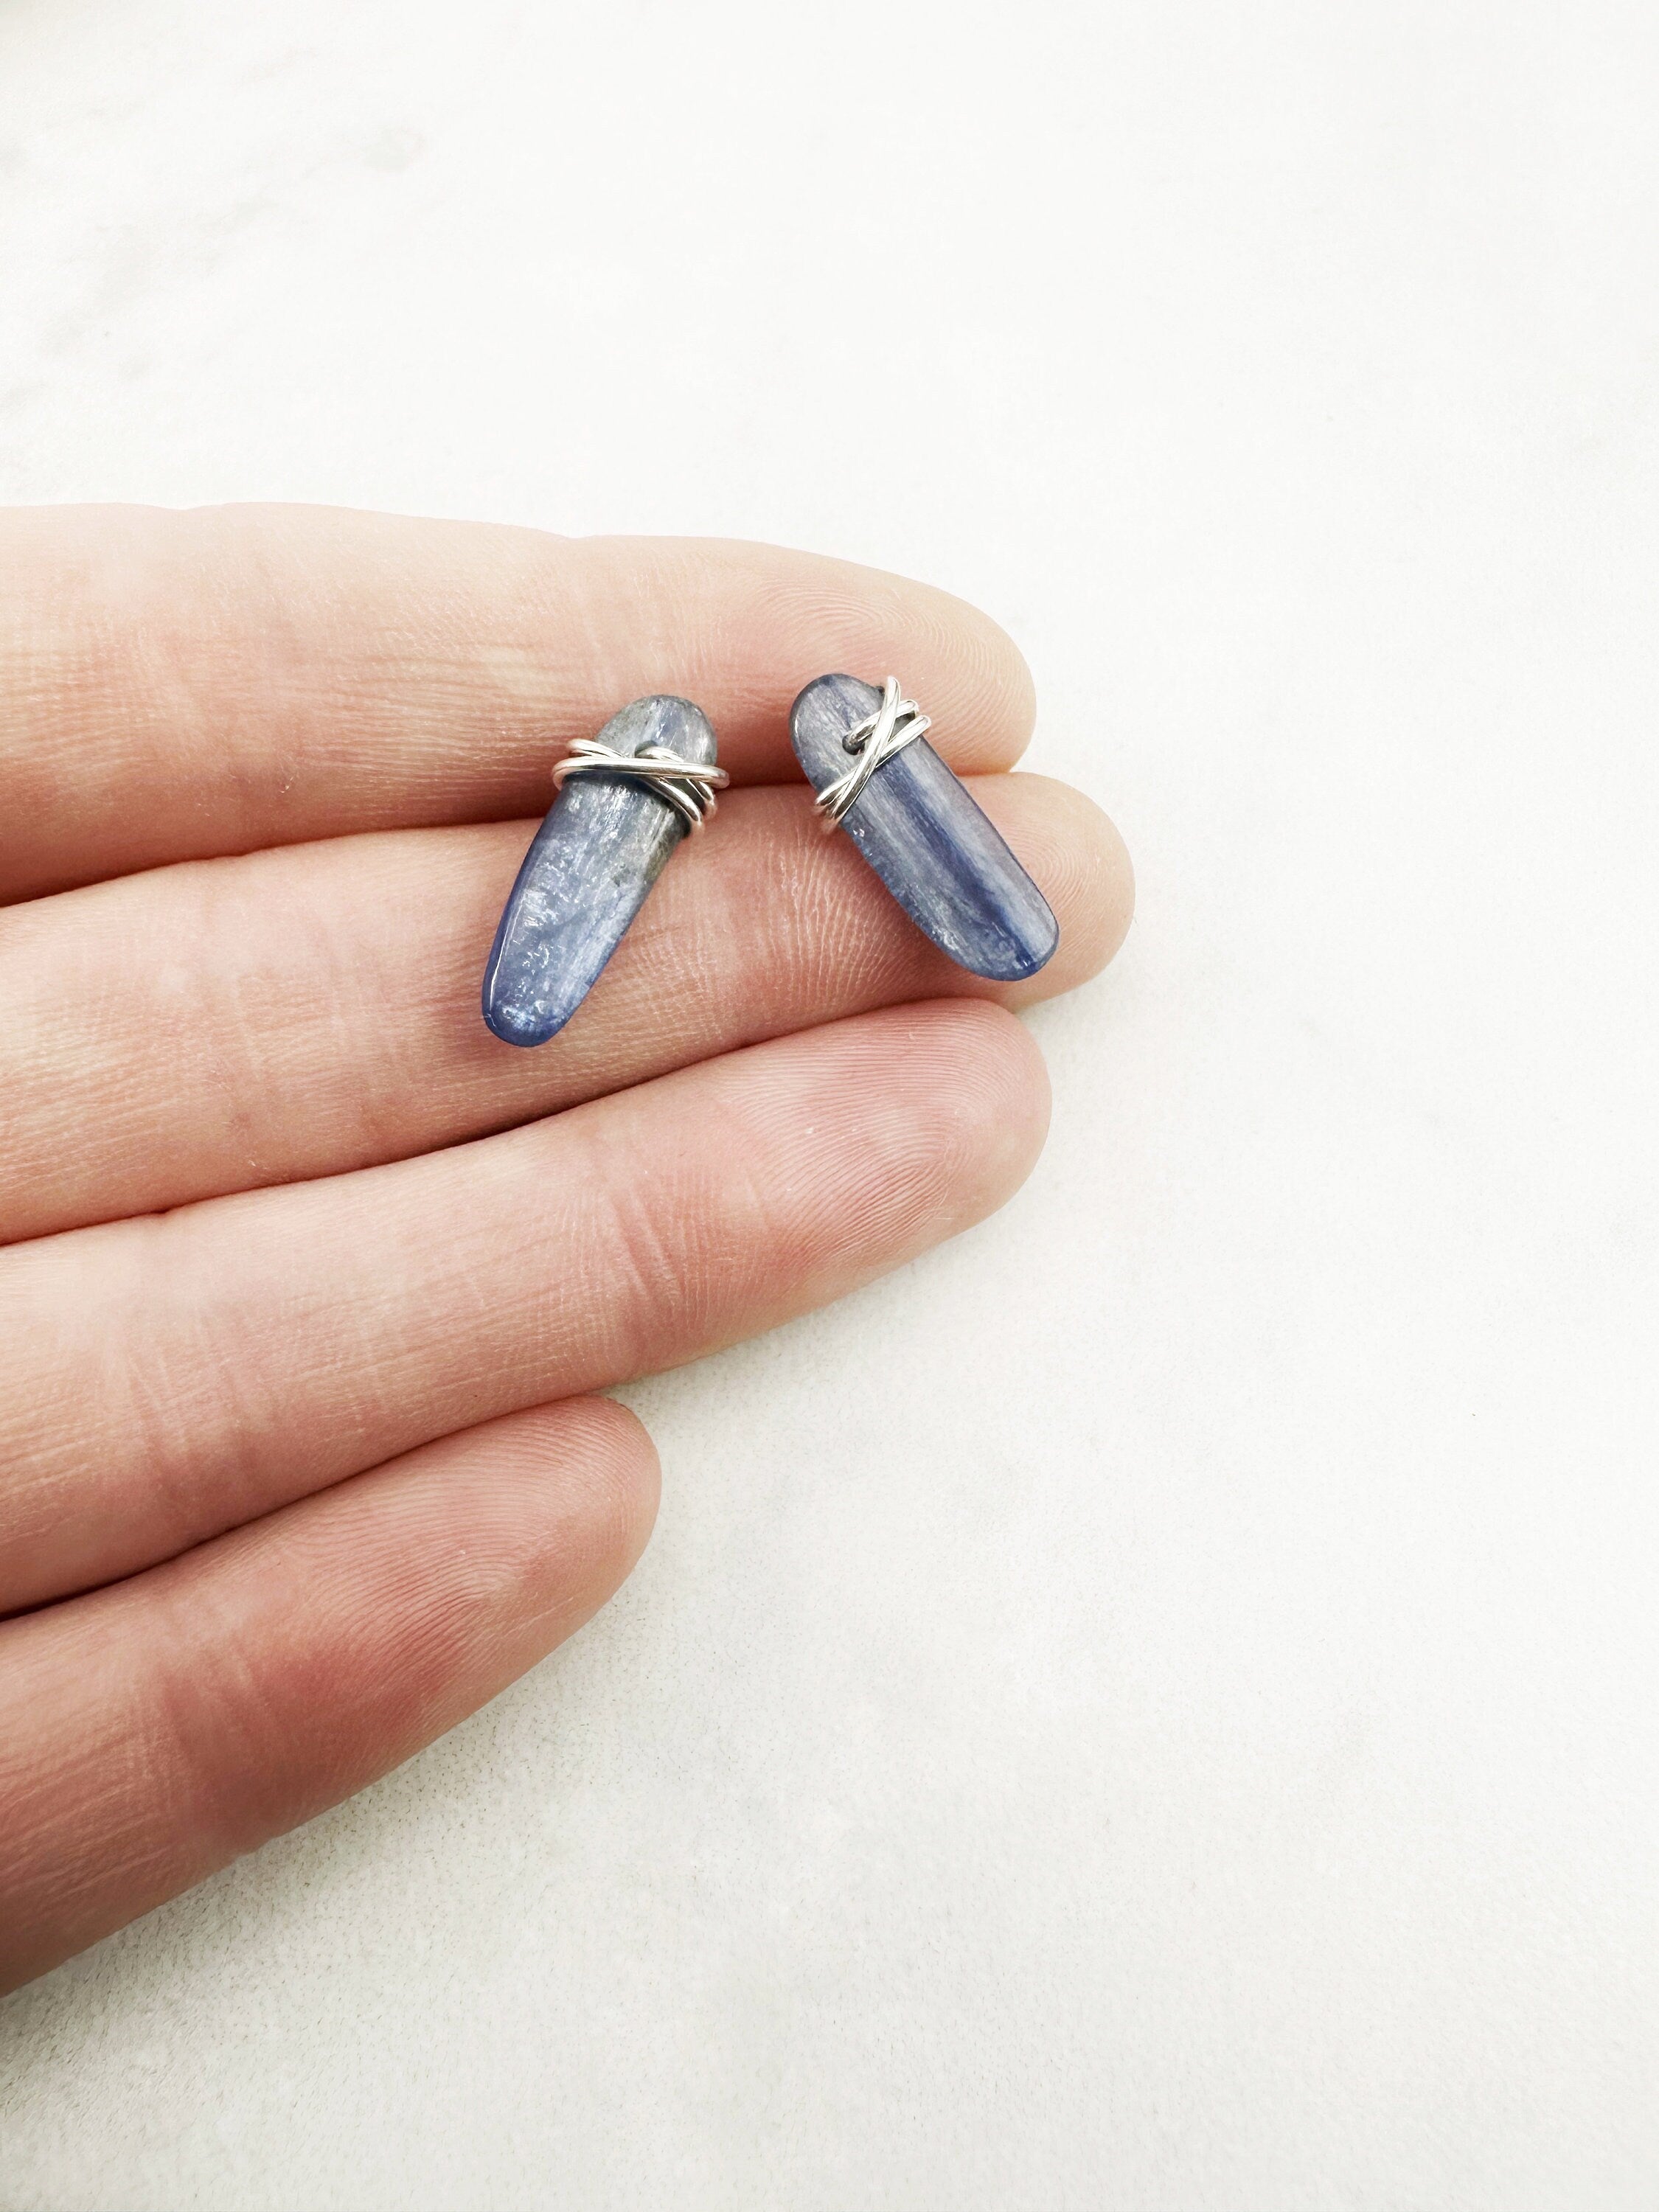 Kyanite Gemstone and Sterling Silver Stud Earrings, gemstone earrings, blue stone earrings, stud earrings